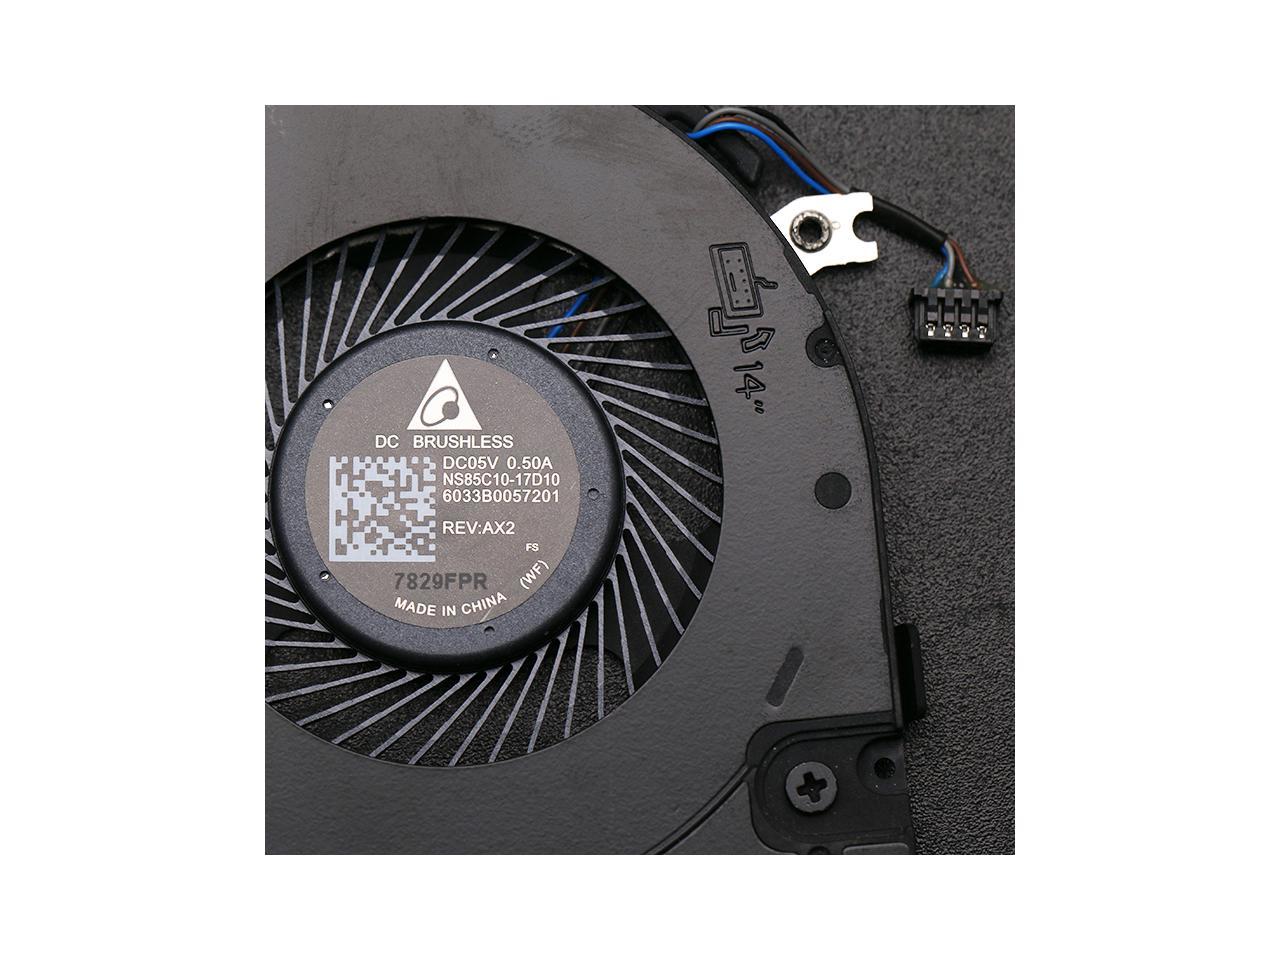 Original Delta NS85C10-17D10 5V 0.50A REV AX2 laptop built-in CPU cooling fan